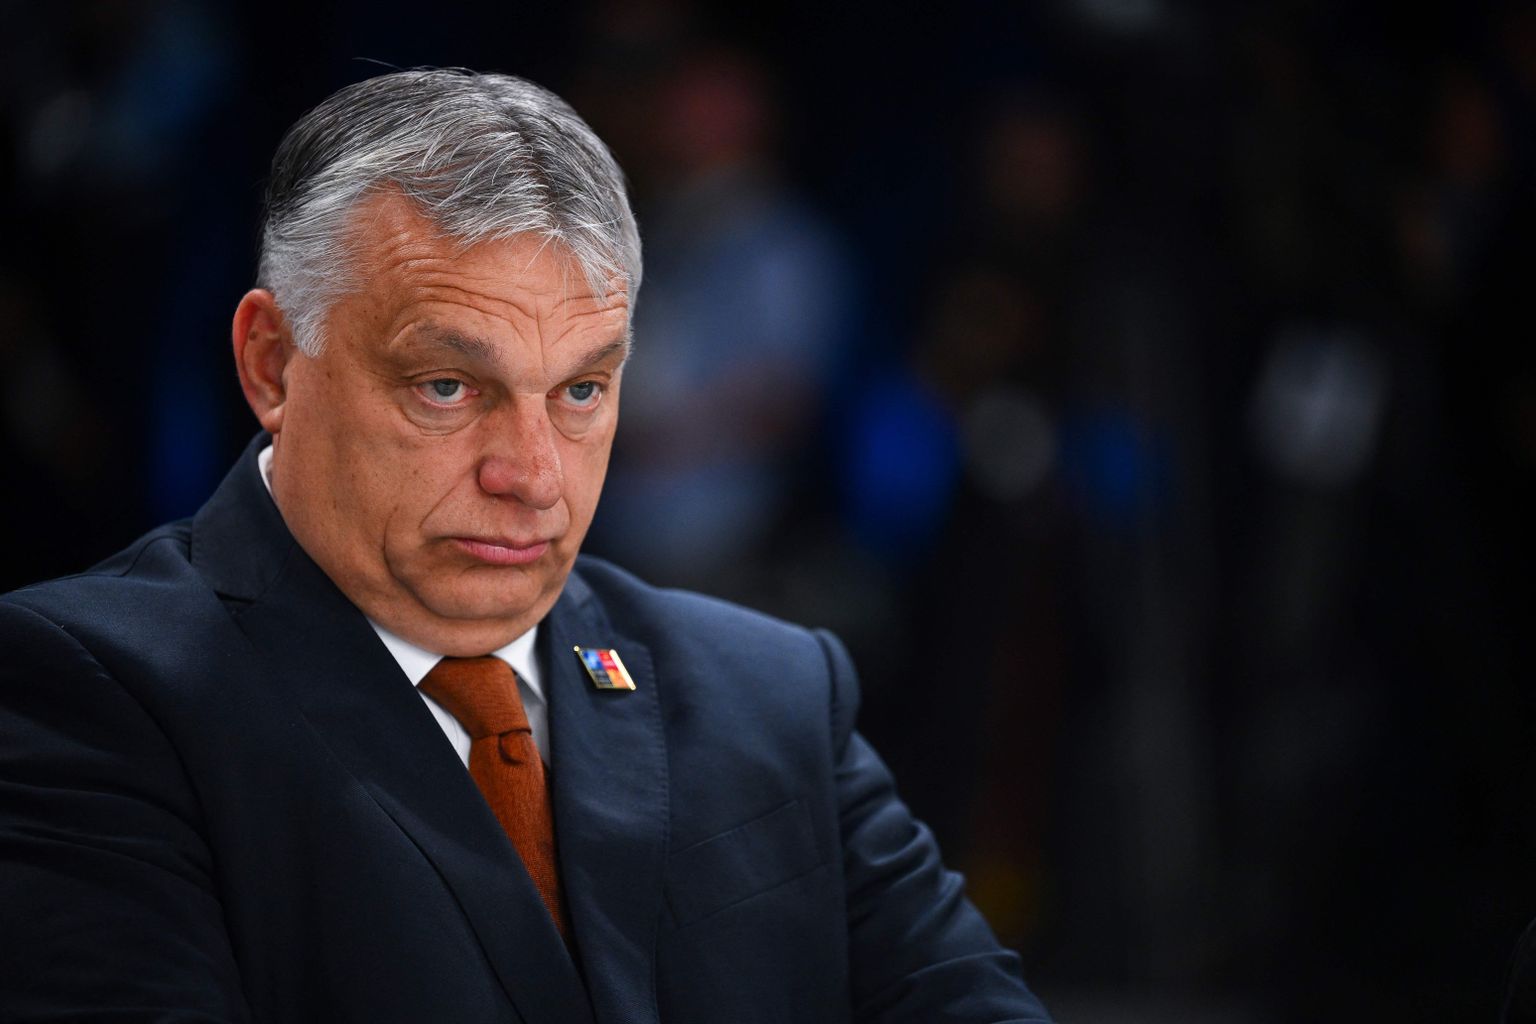 Ungari paremäärmuslik peaminister Viktor Orbán.